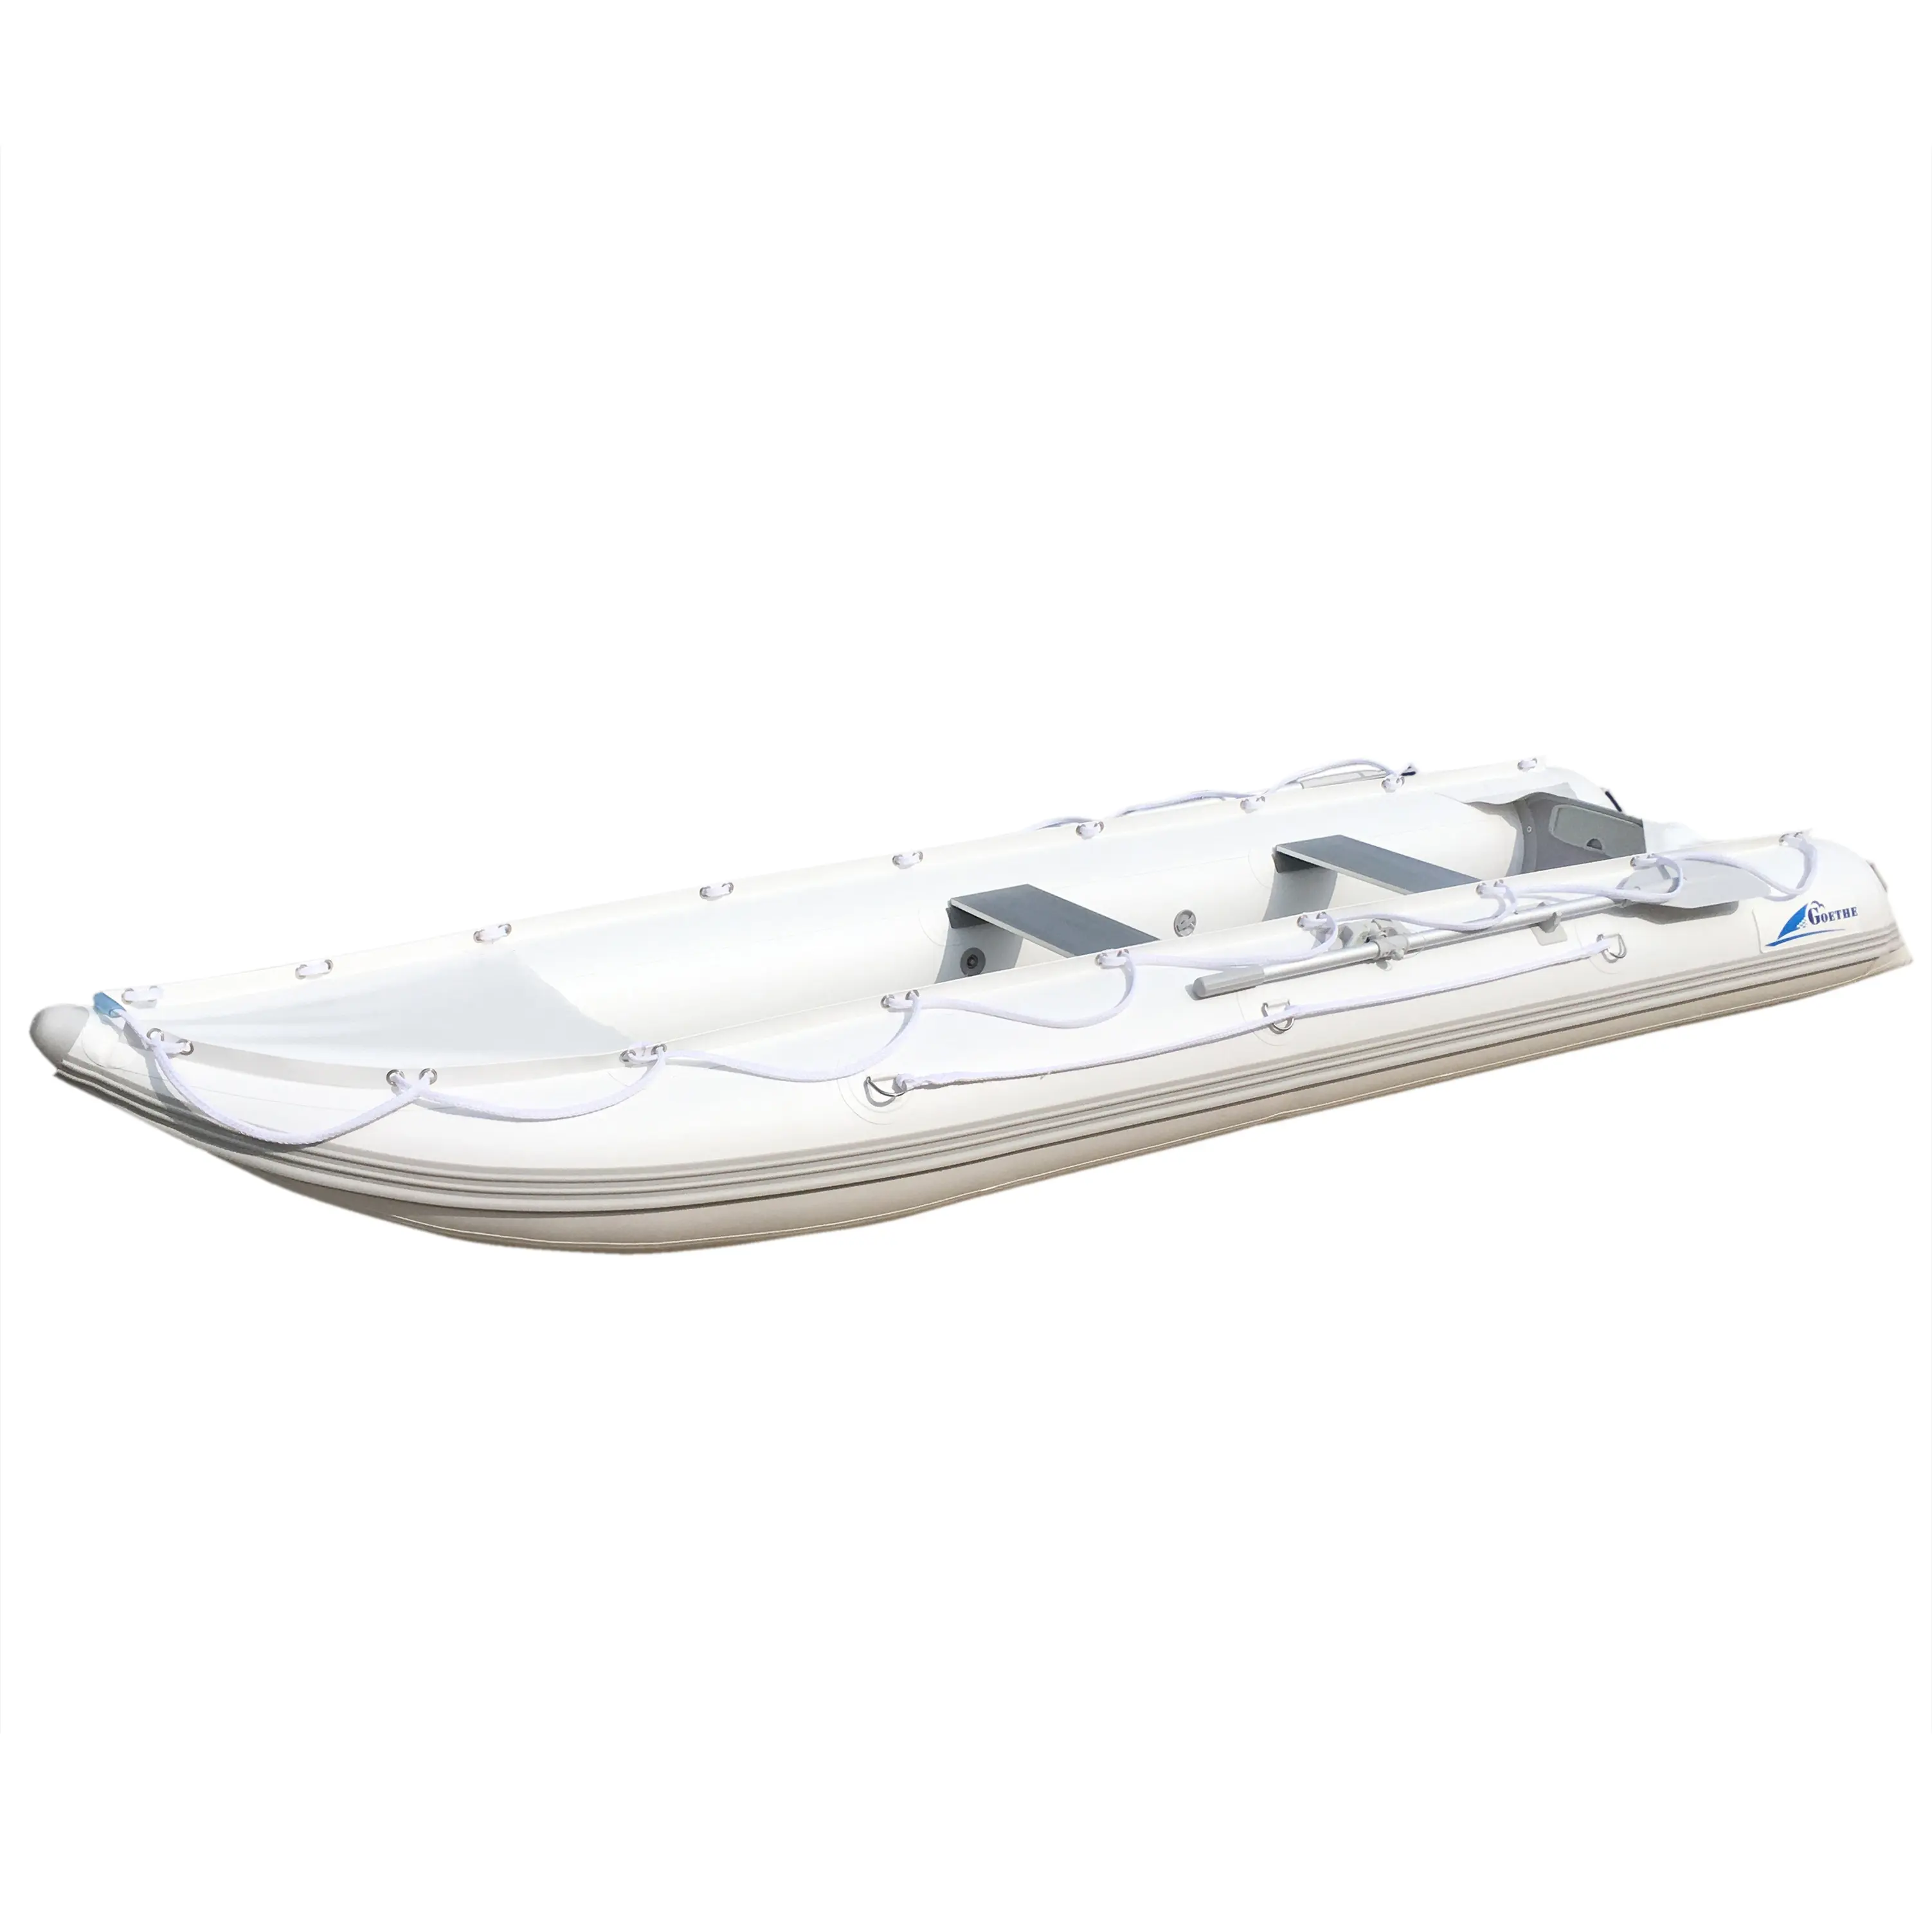 Bateau gonflable en PVC ou HYPALON, pour bateau gonflable de 12 pieds, pour dérive, surf et course, avec siège en aluminium